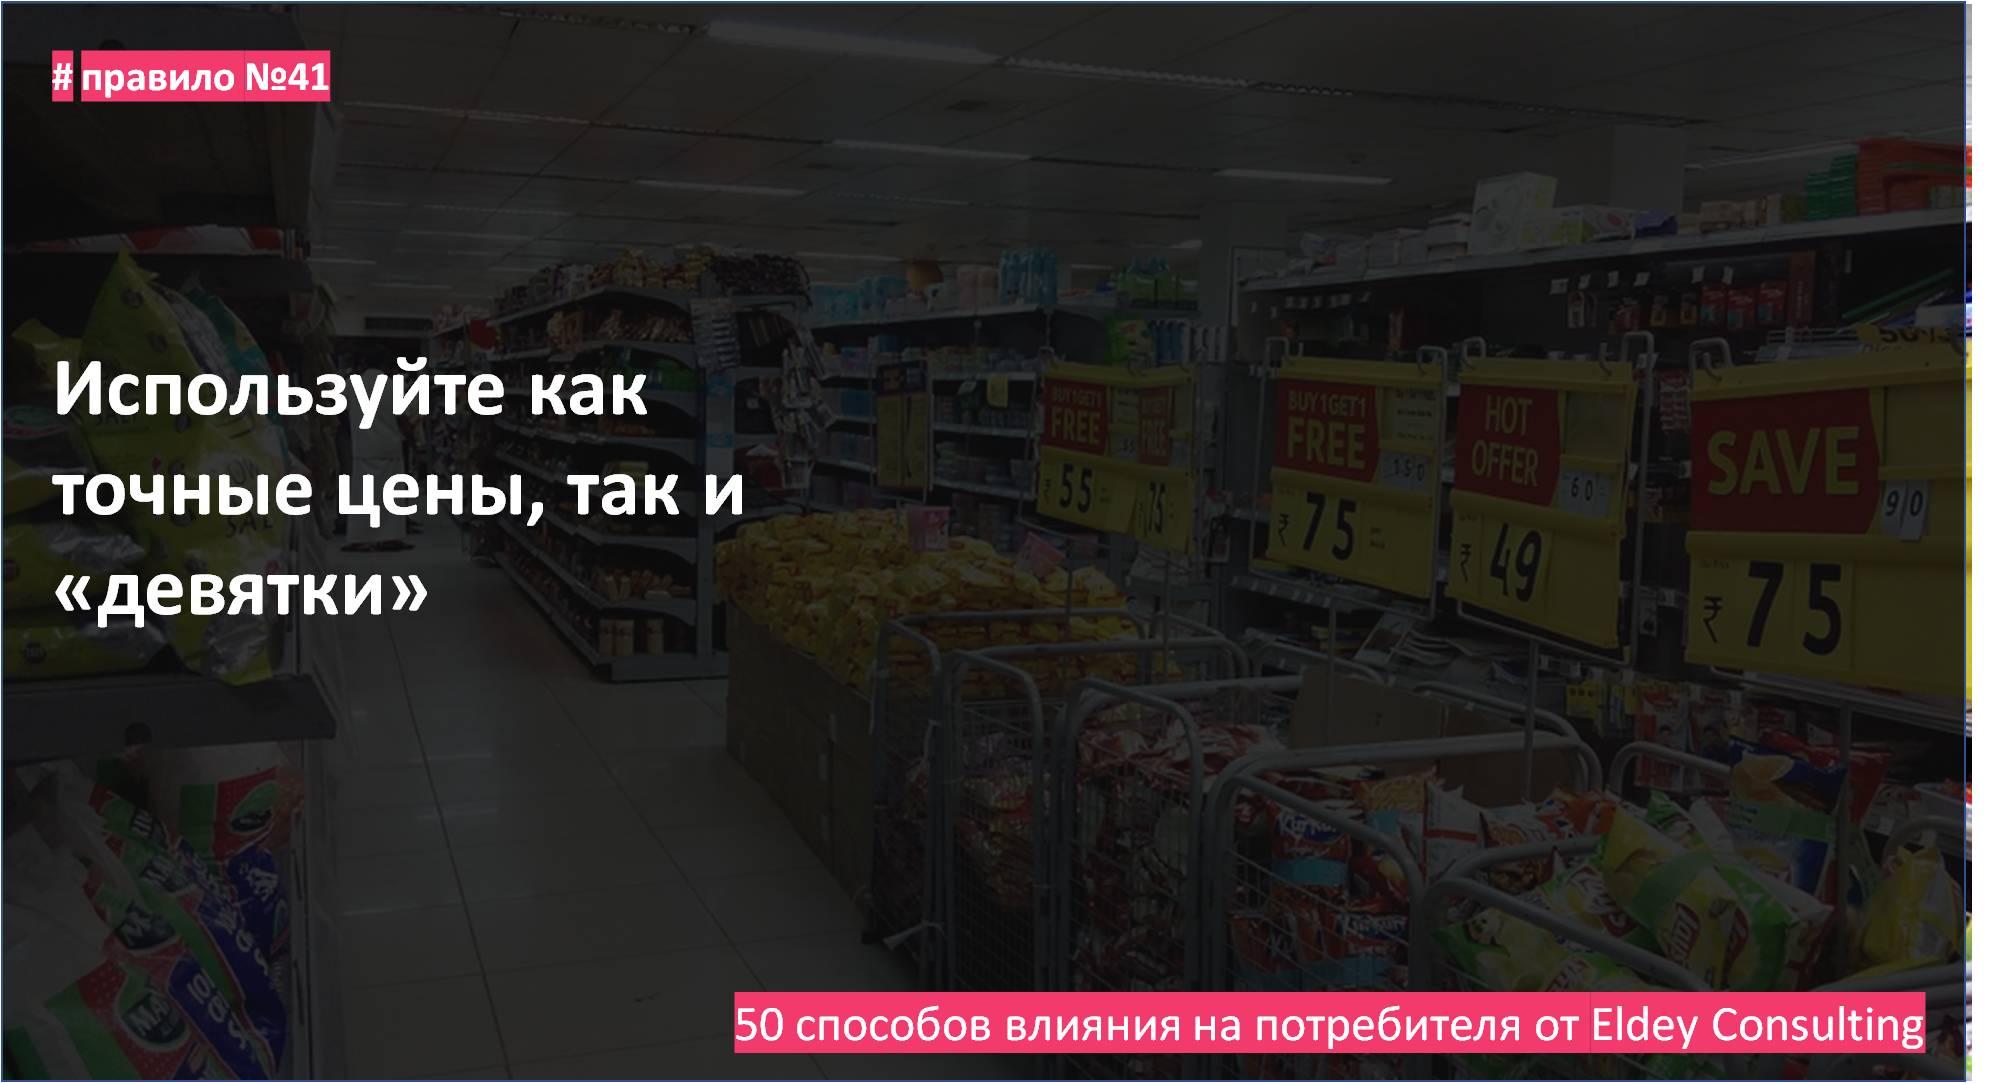 психология маркетинга - поведение потребителей. Eldey Consulting Group. eldey.ru